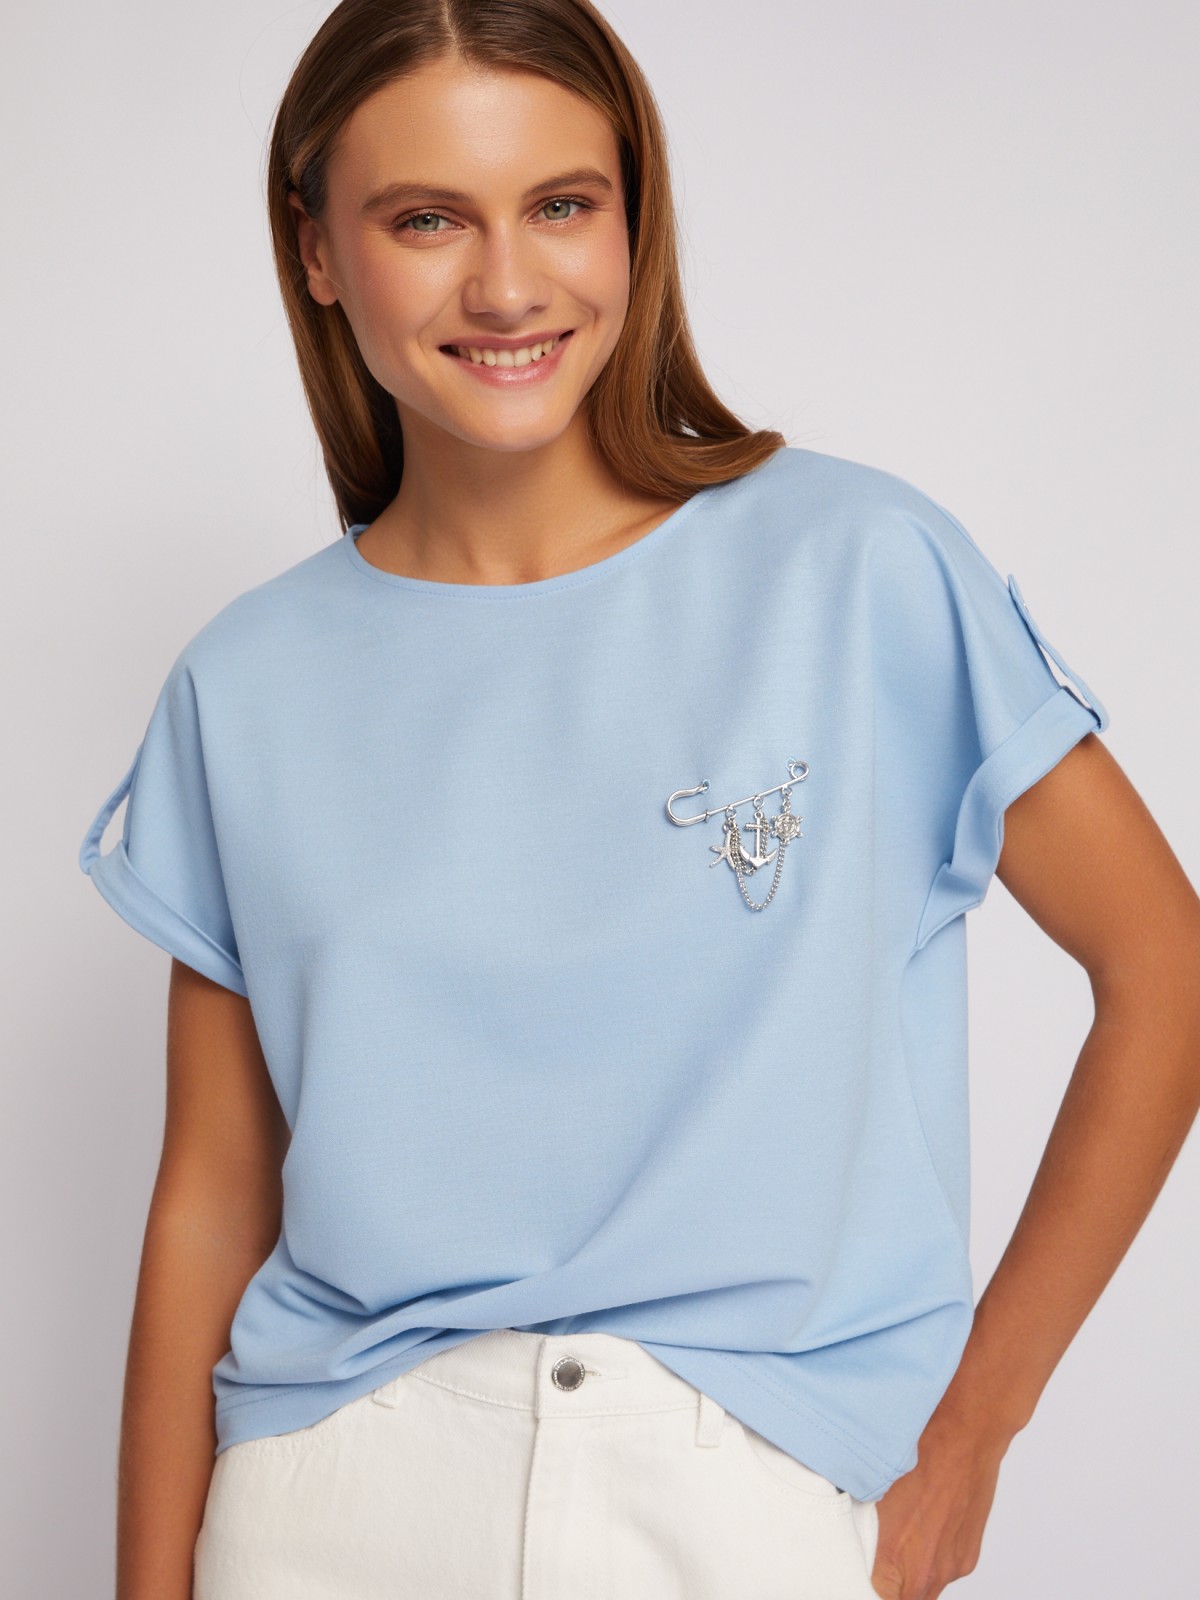 Блузка-футболка с коротким рукавом и брошью zolla 024213259063, цвет светло-голубой, размер XS